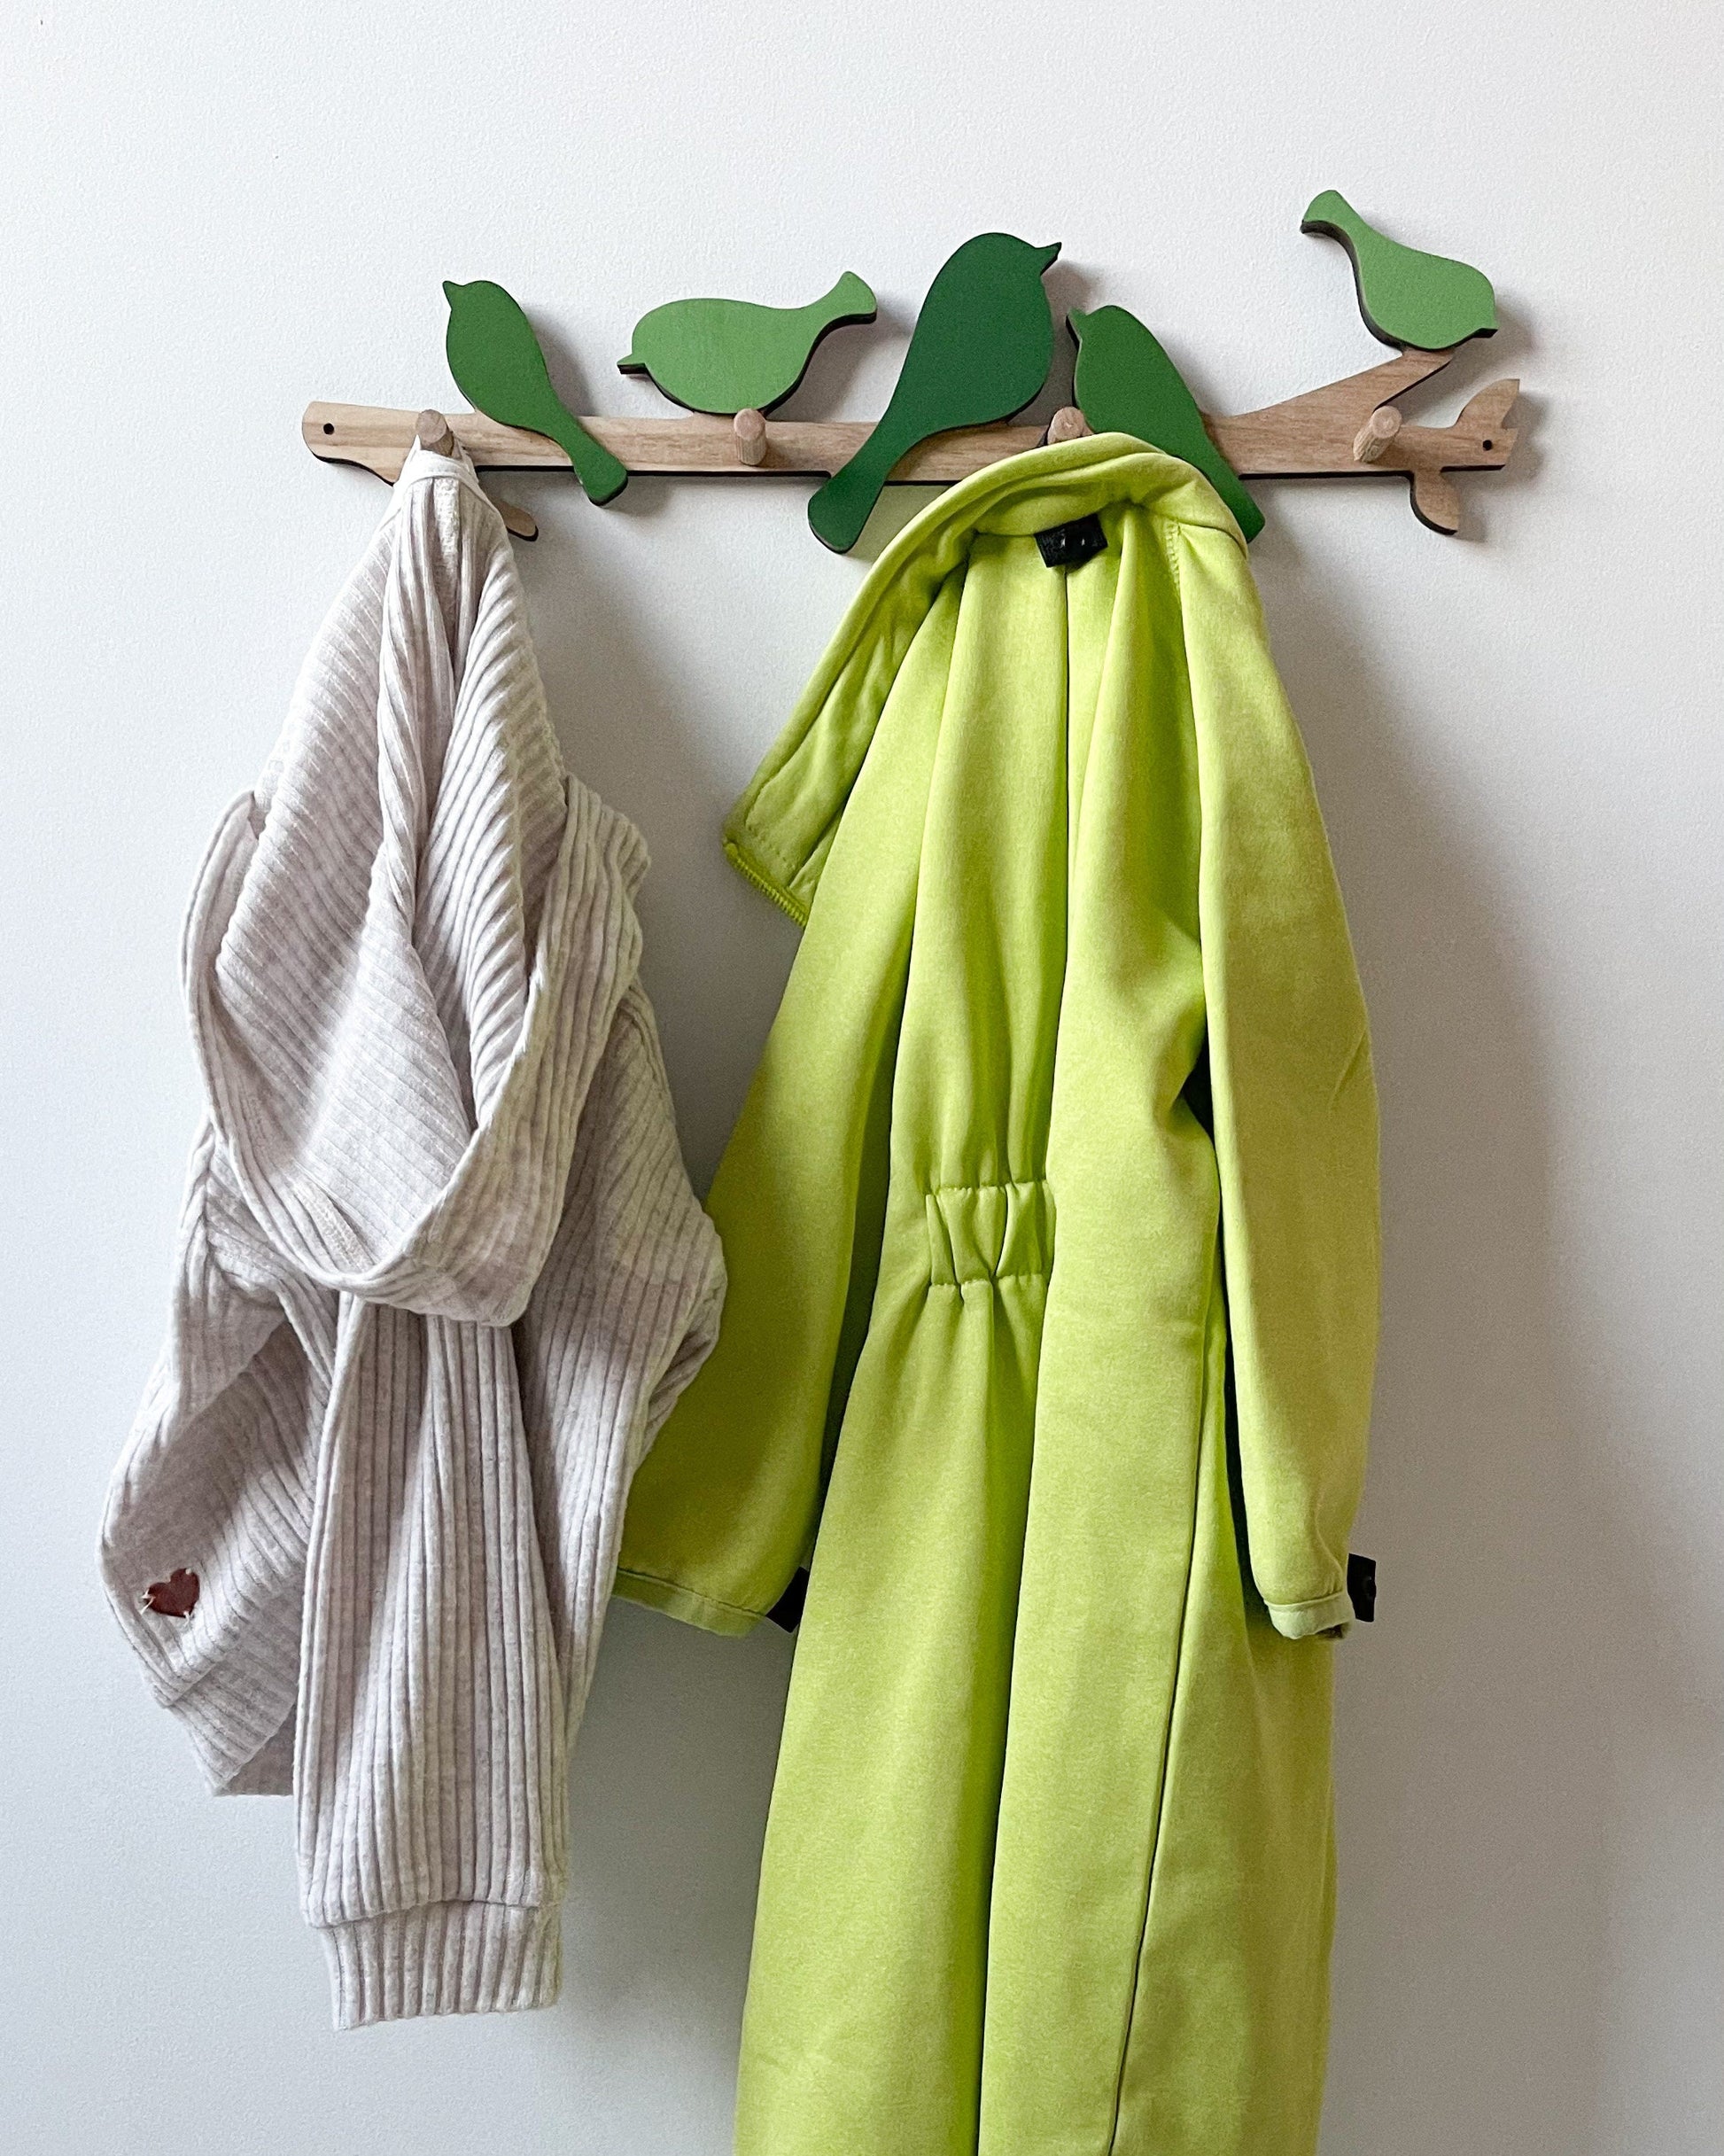 Nordic Natural Wood Clothes Hanger Wall Coat Hook Kids Room Decor